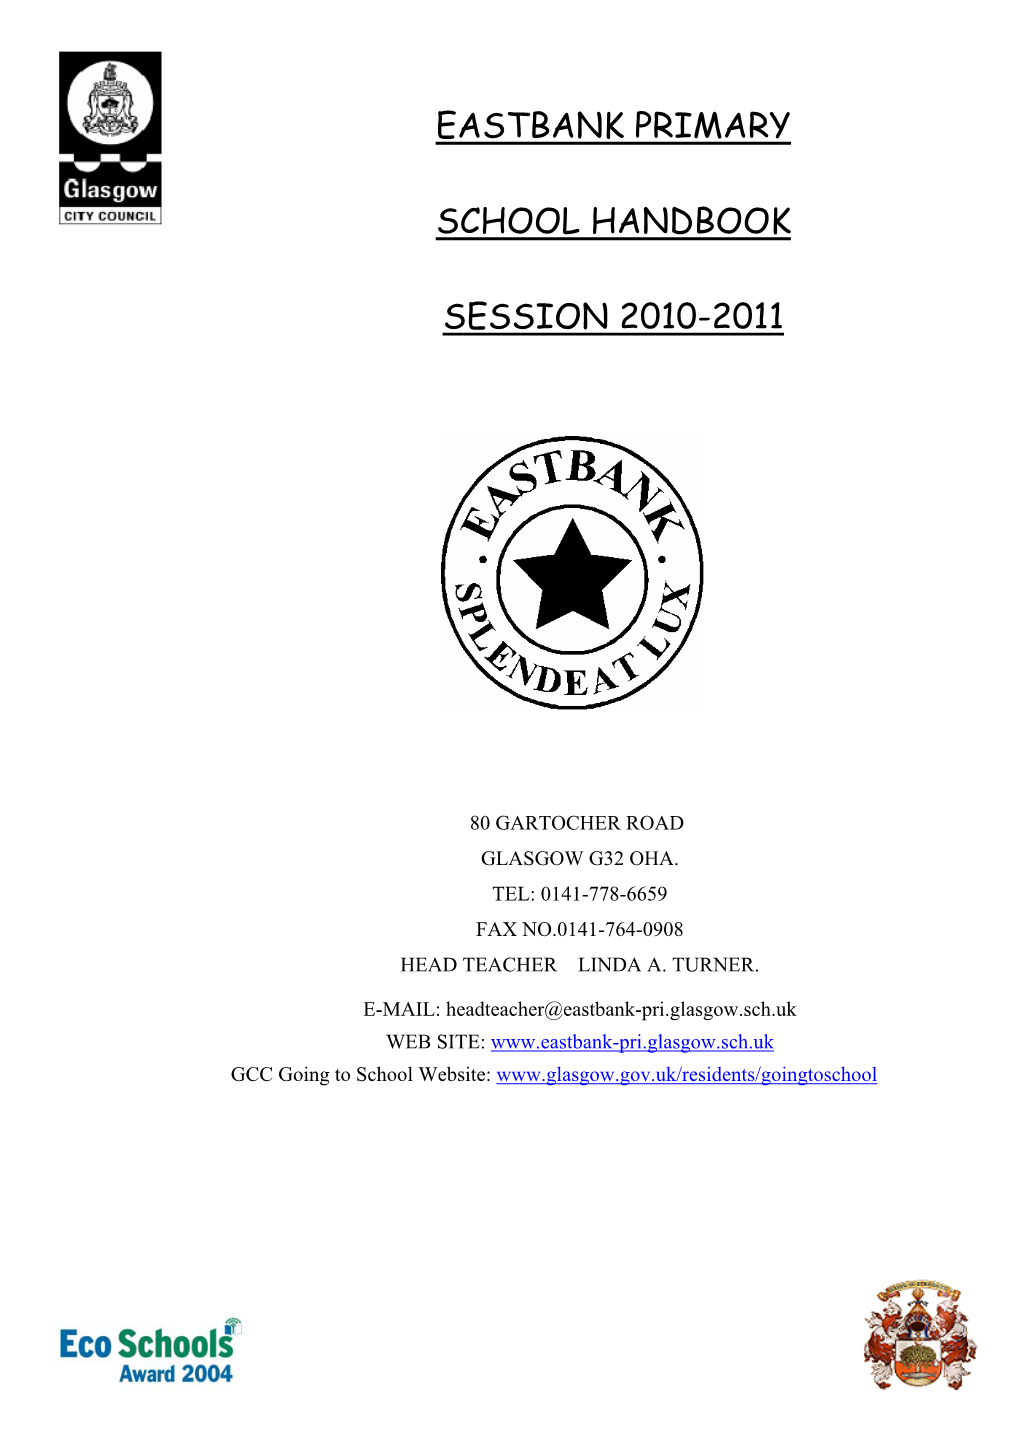 Eastbank Primary School Handbook 2009/2010